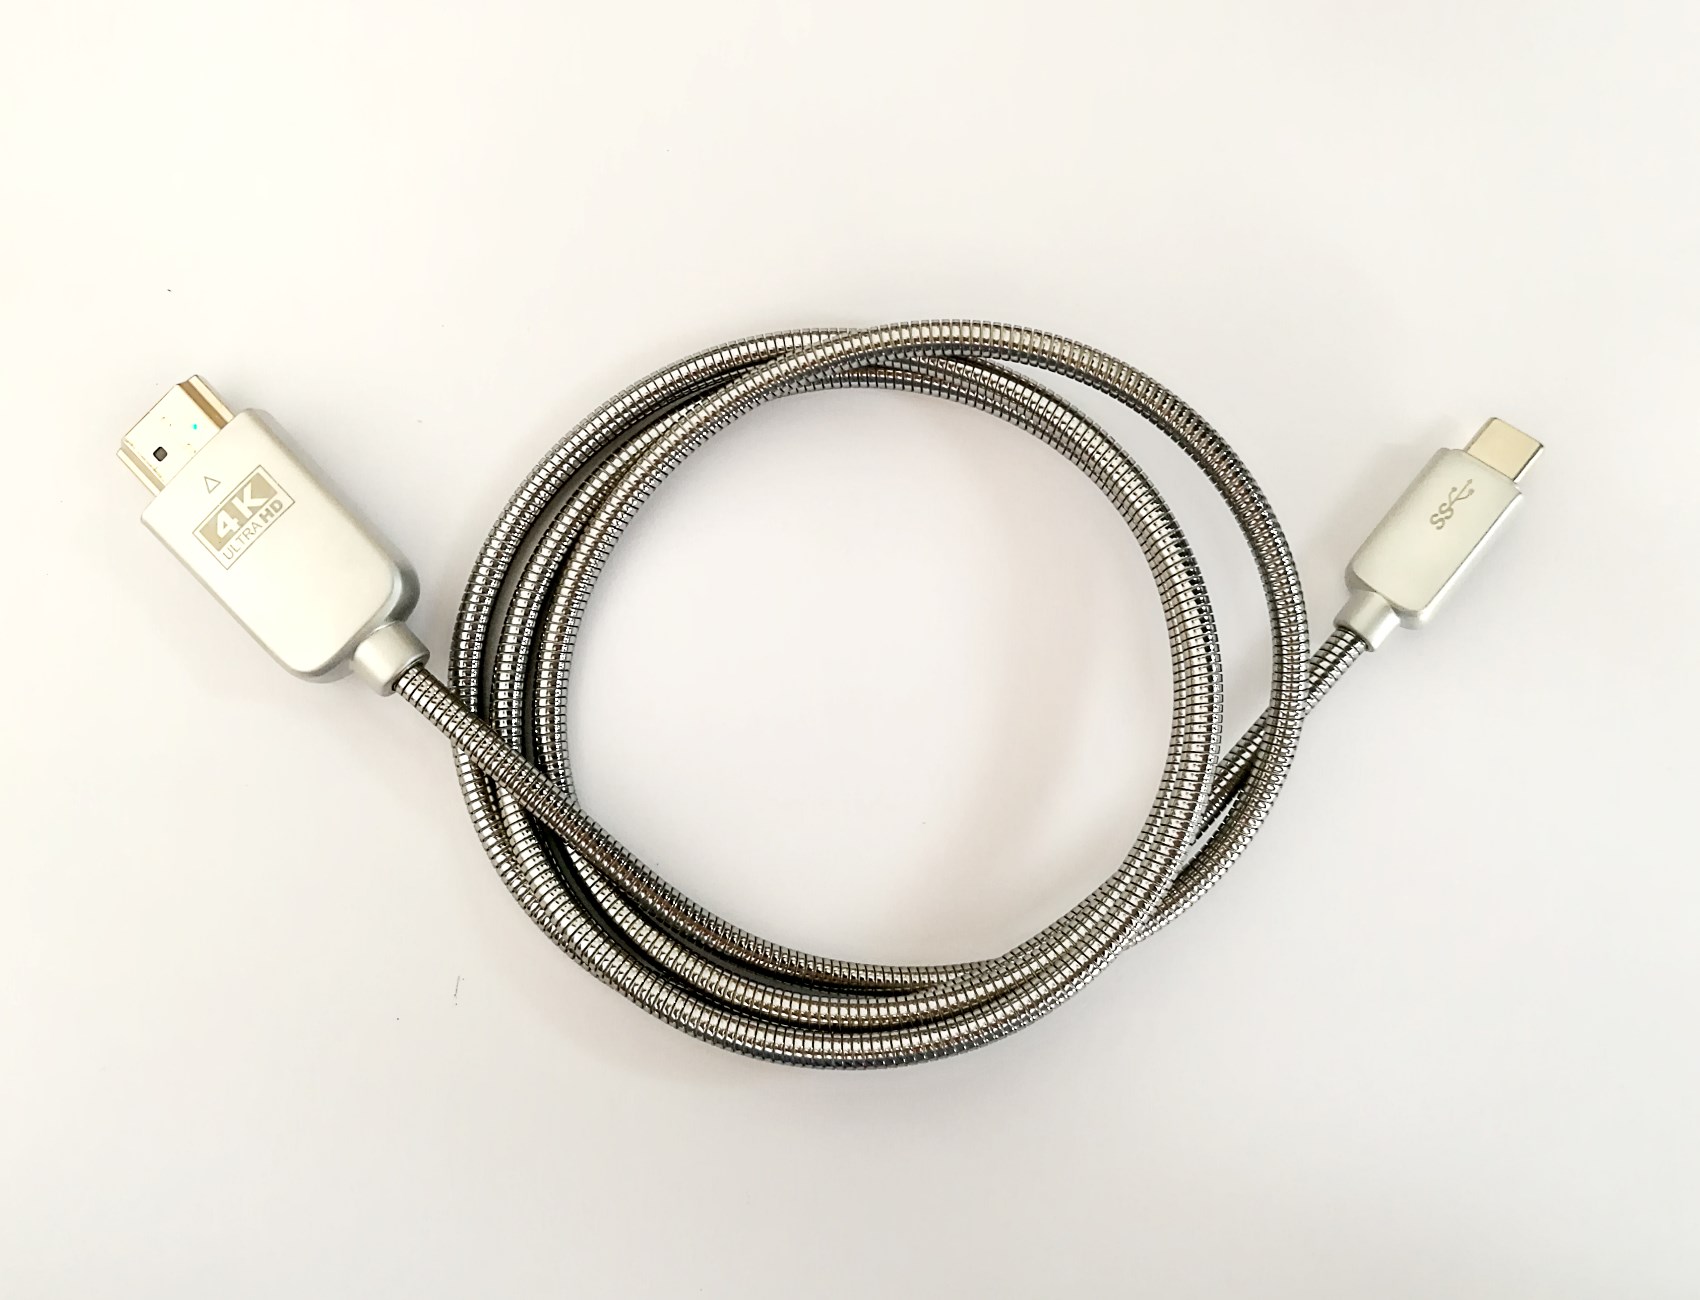 Type-c connector advantages